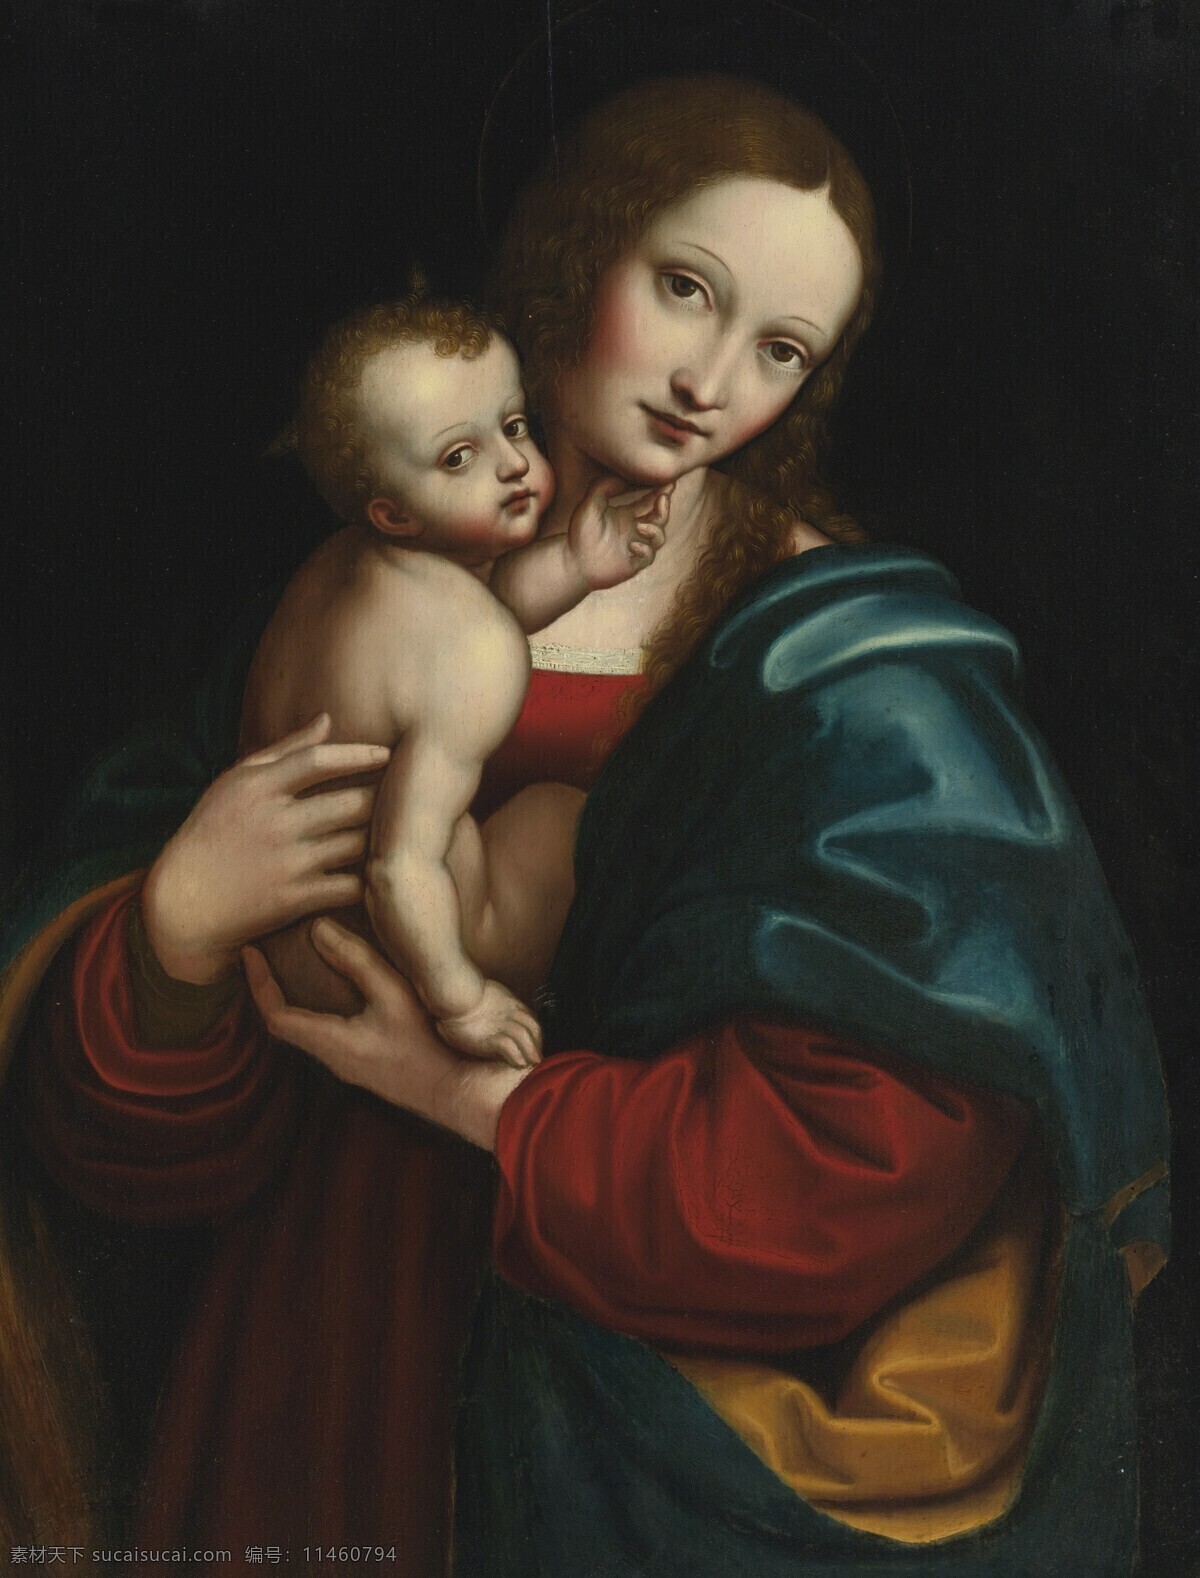 圣母与圣婴 圣母玛丽娅 基督 耶稣 母子情深 宗教油画 古典油画 油画 绘画书法 文化艺术